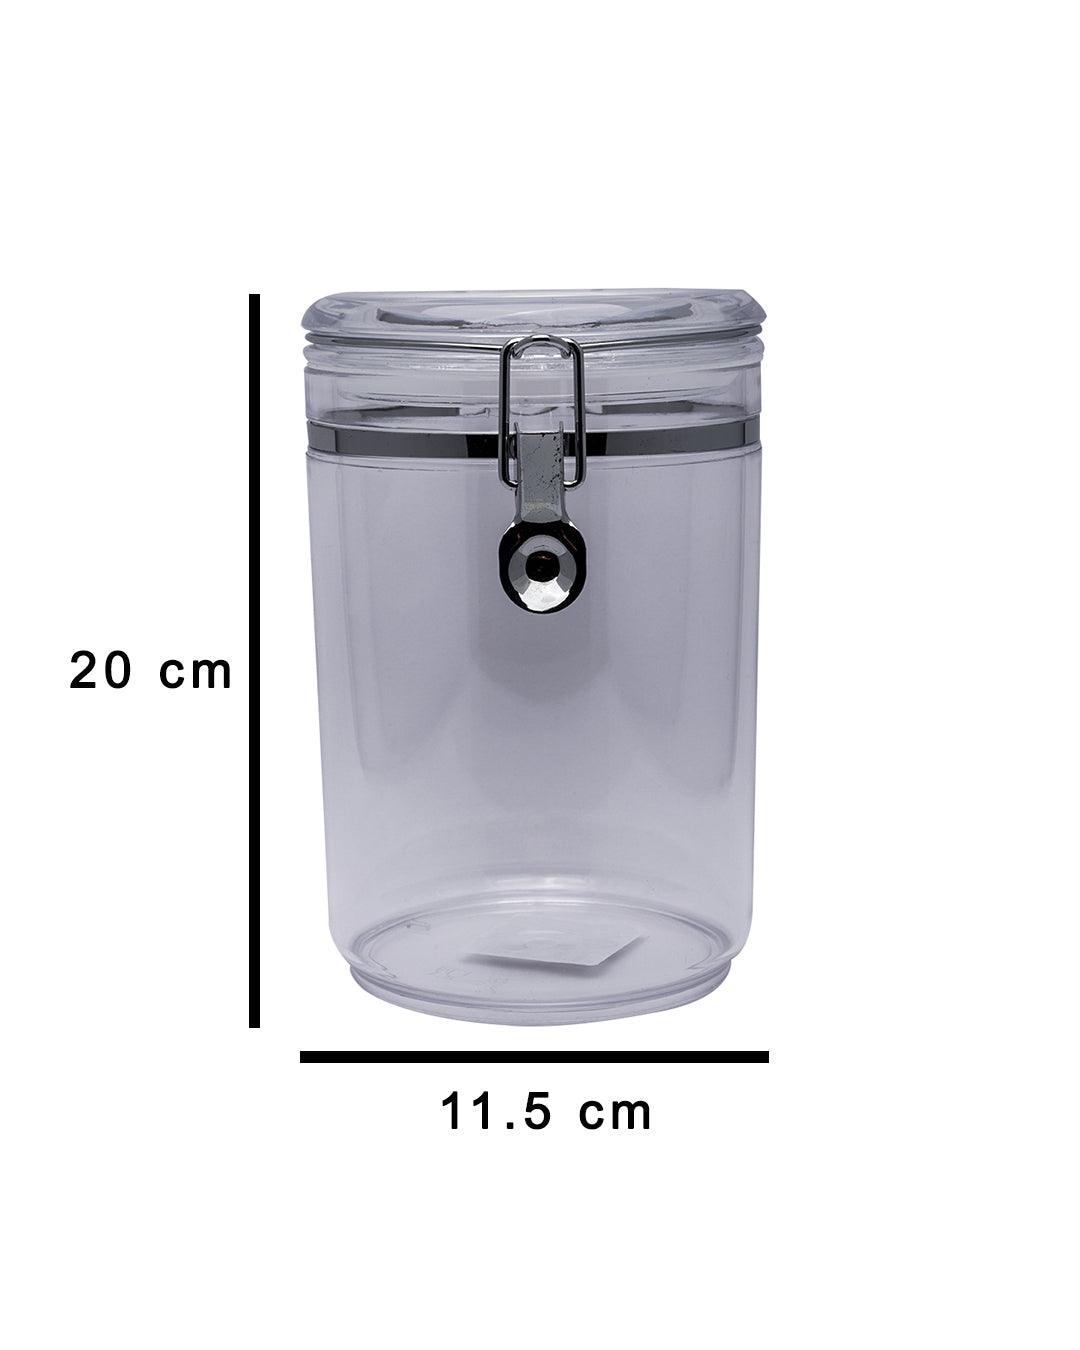 Storage Jar, for Kitchen & Home, Transparent, Plastic, 1.9 Litre - MARKET 99